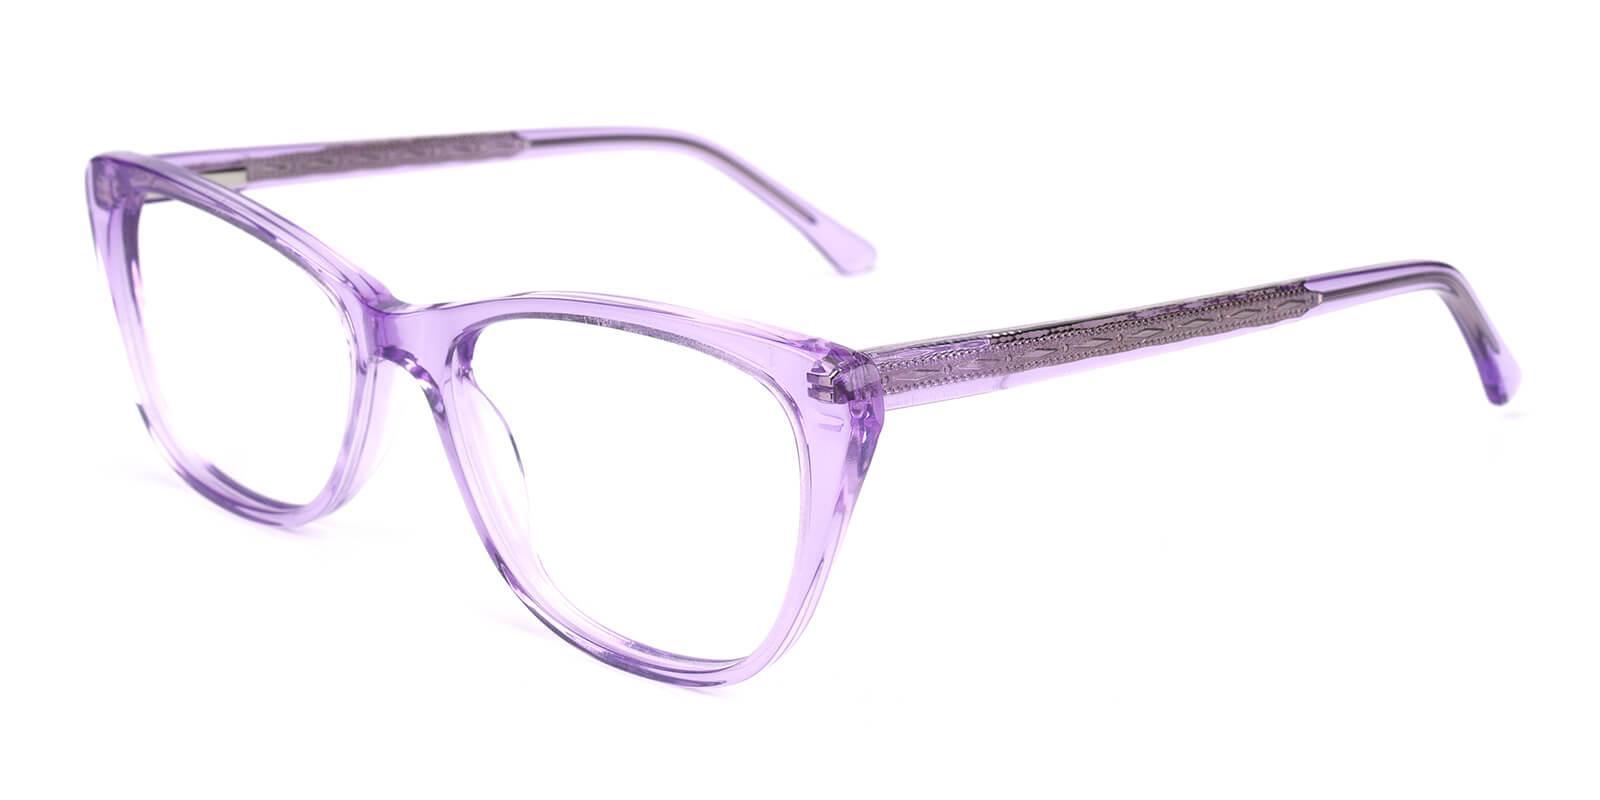 Yuke Purple Acetate Eyeglasses , SpringHinges , UniversalBridgeFit Frames from ABBE Glasses